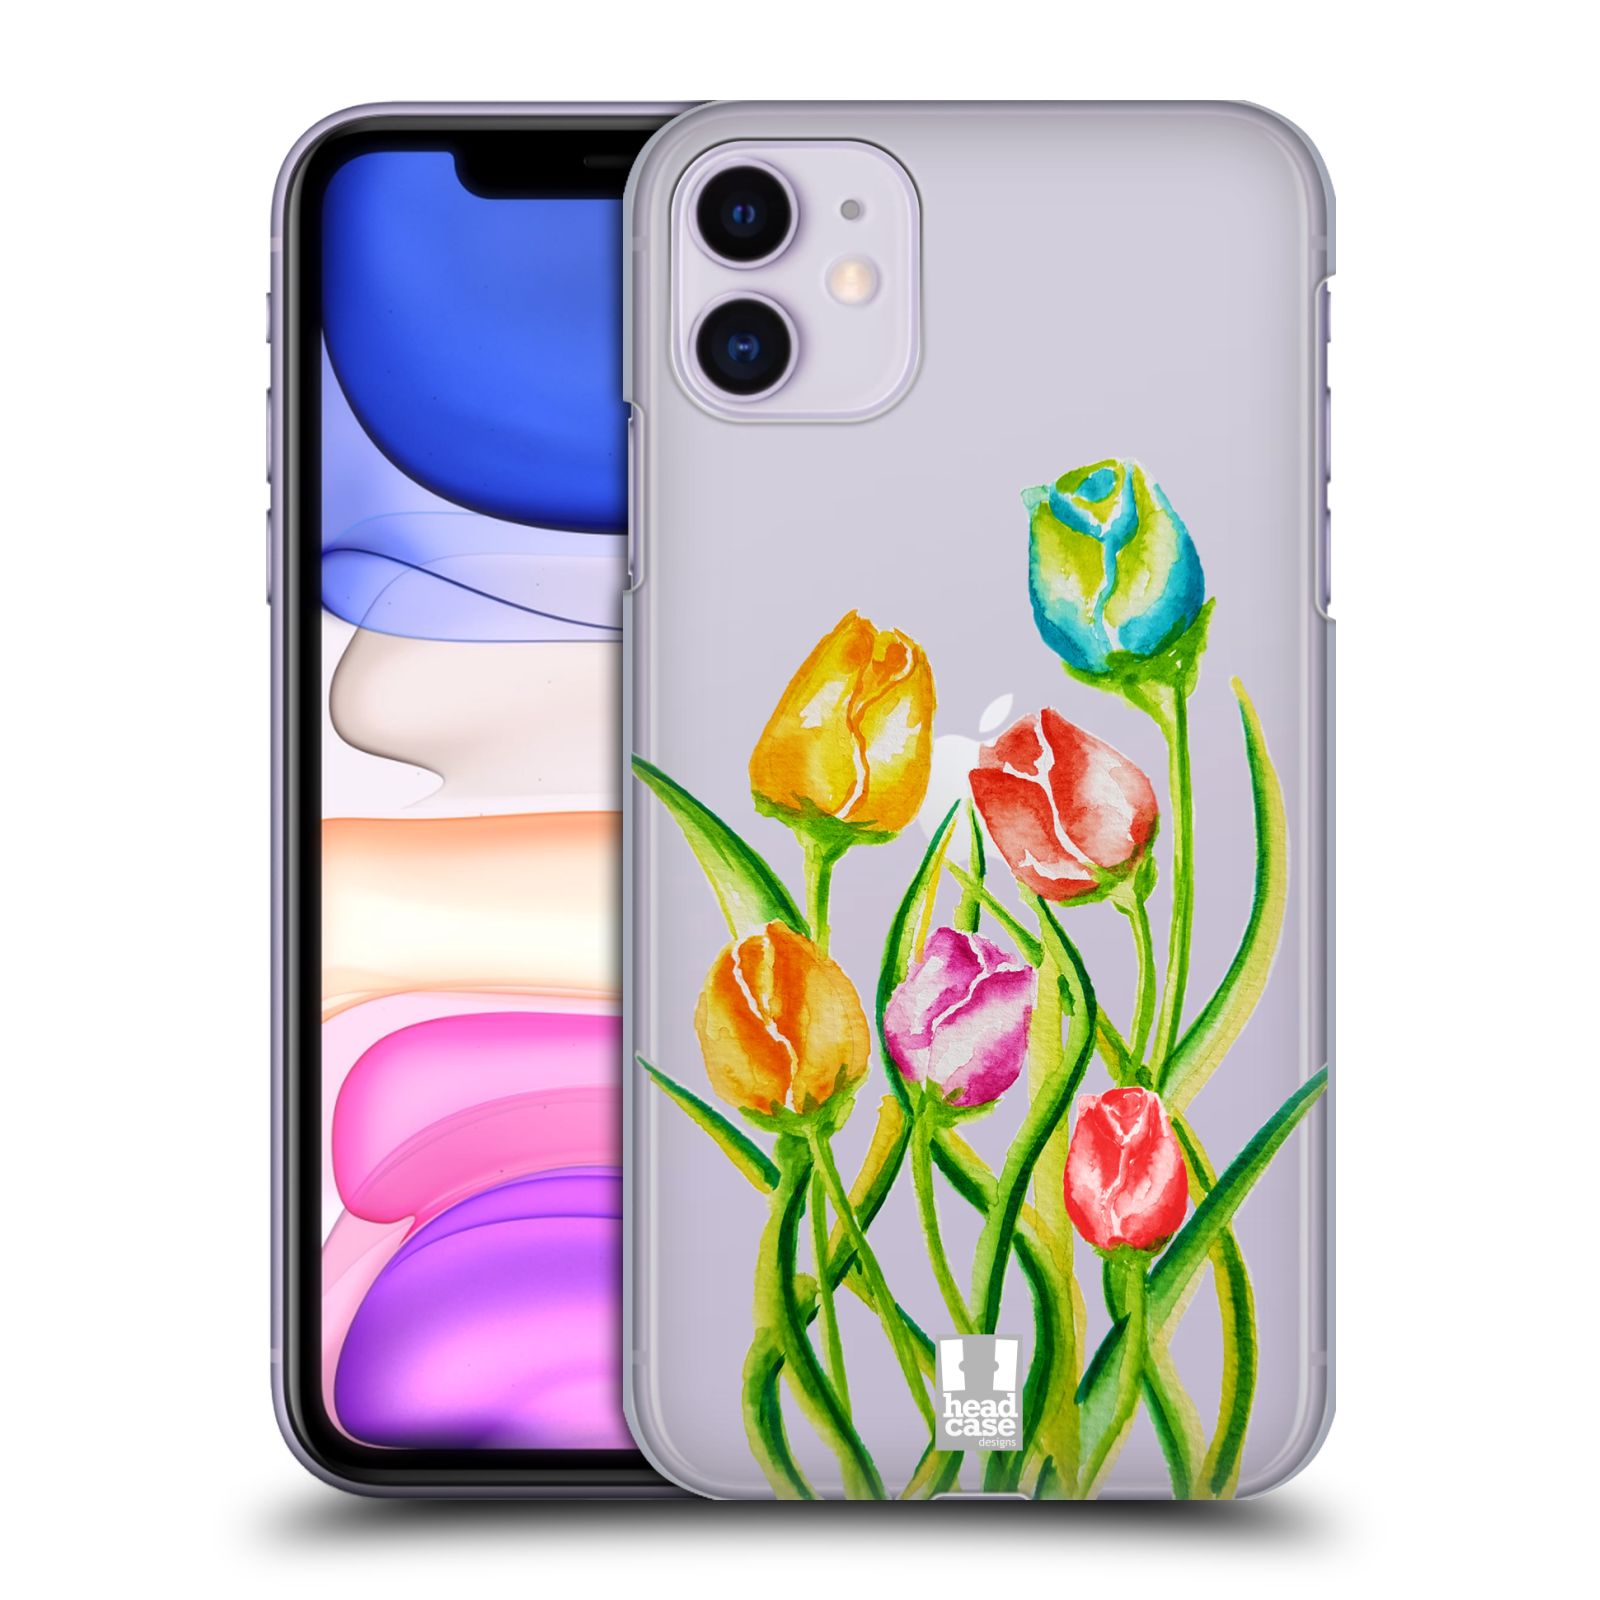 Pouzdro na mobil Apple Iphone 11 - HEAD CASE - Květina Tulipán vodní barvy